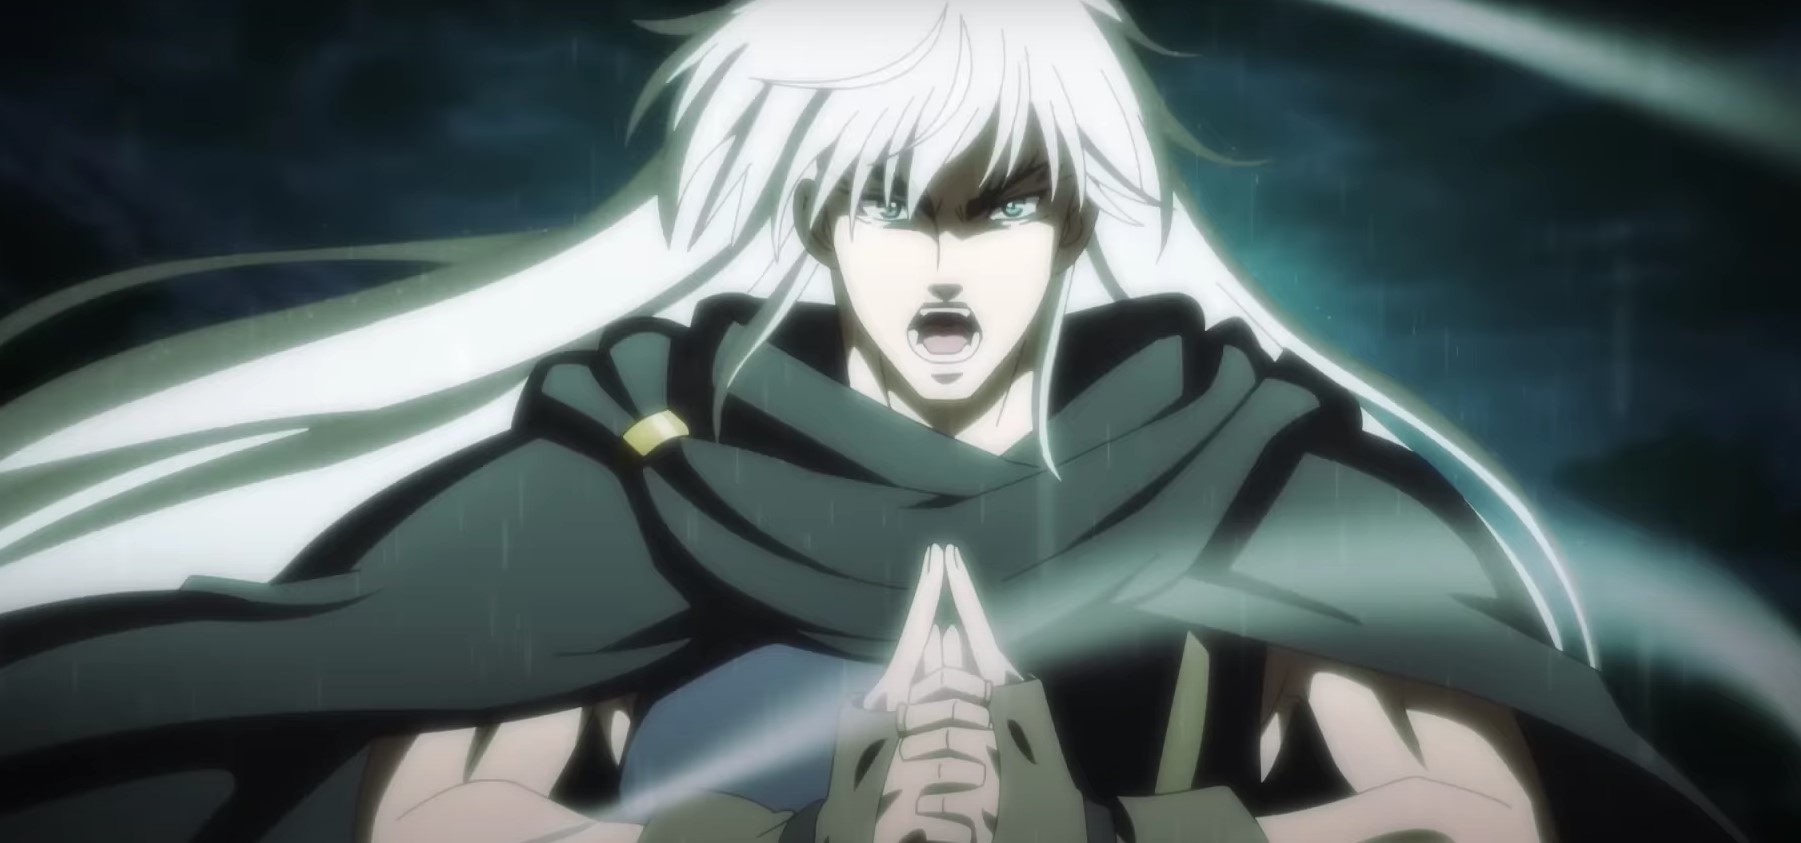 Heavy Metal Dark Fantasy Anime Part 2 Set For September Release